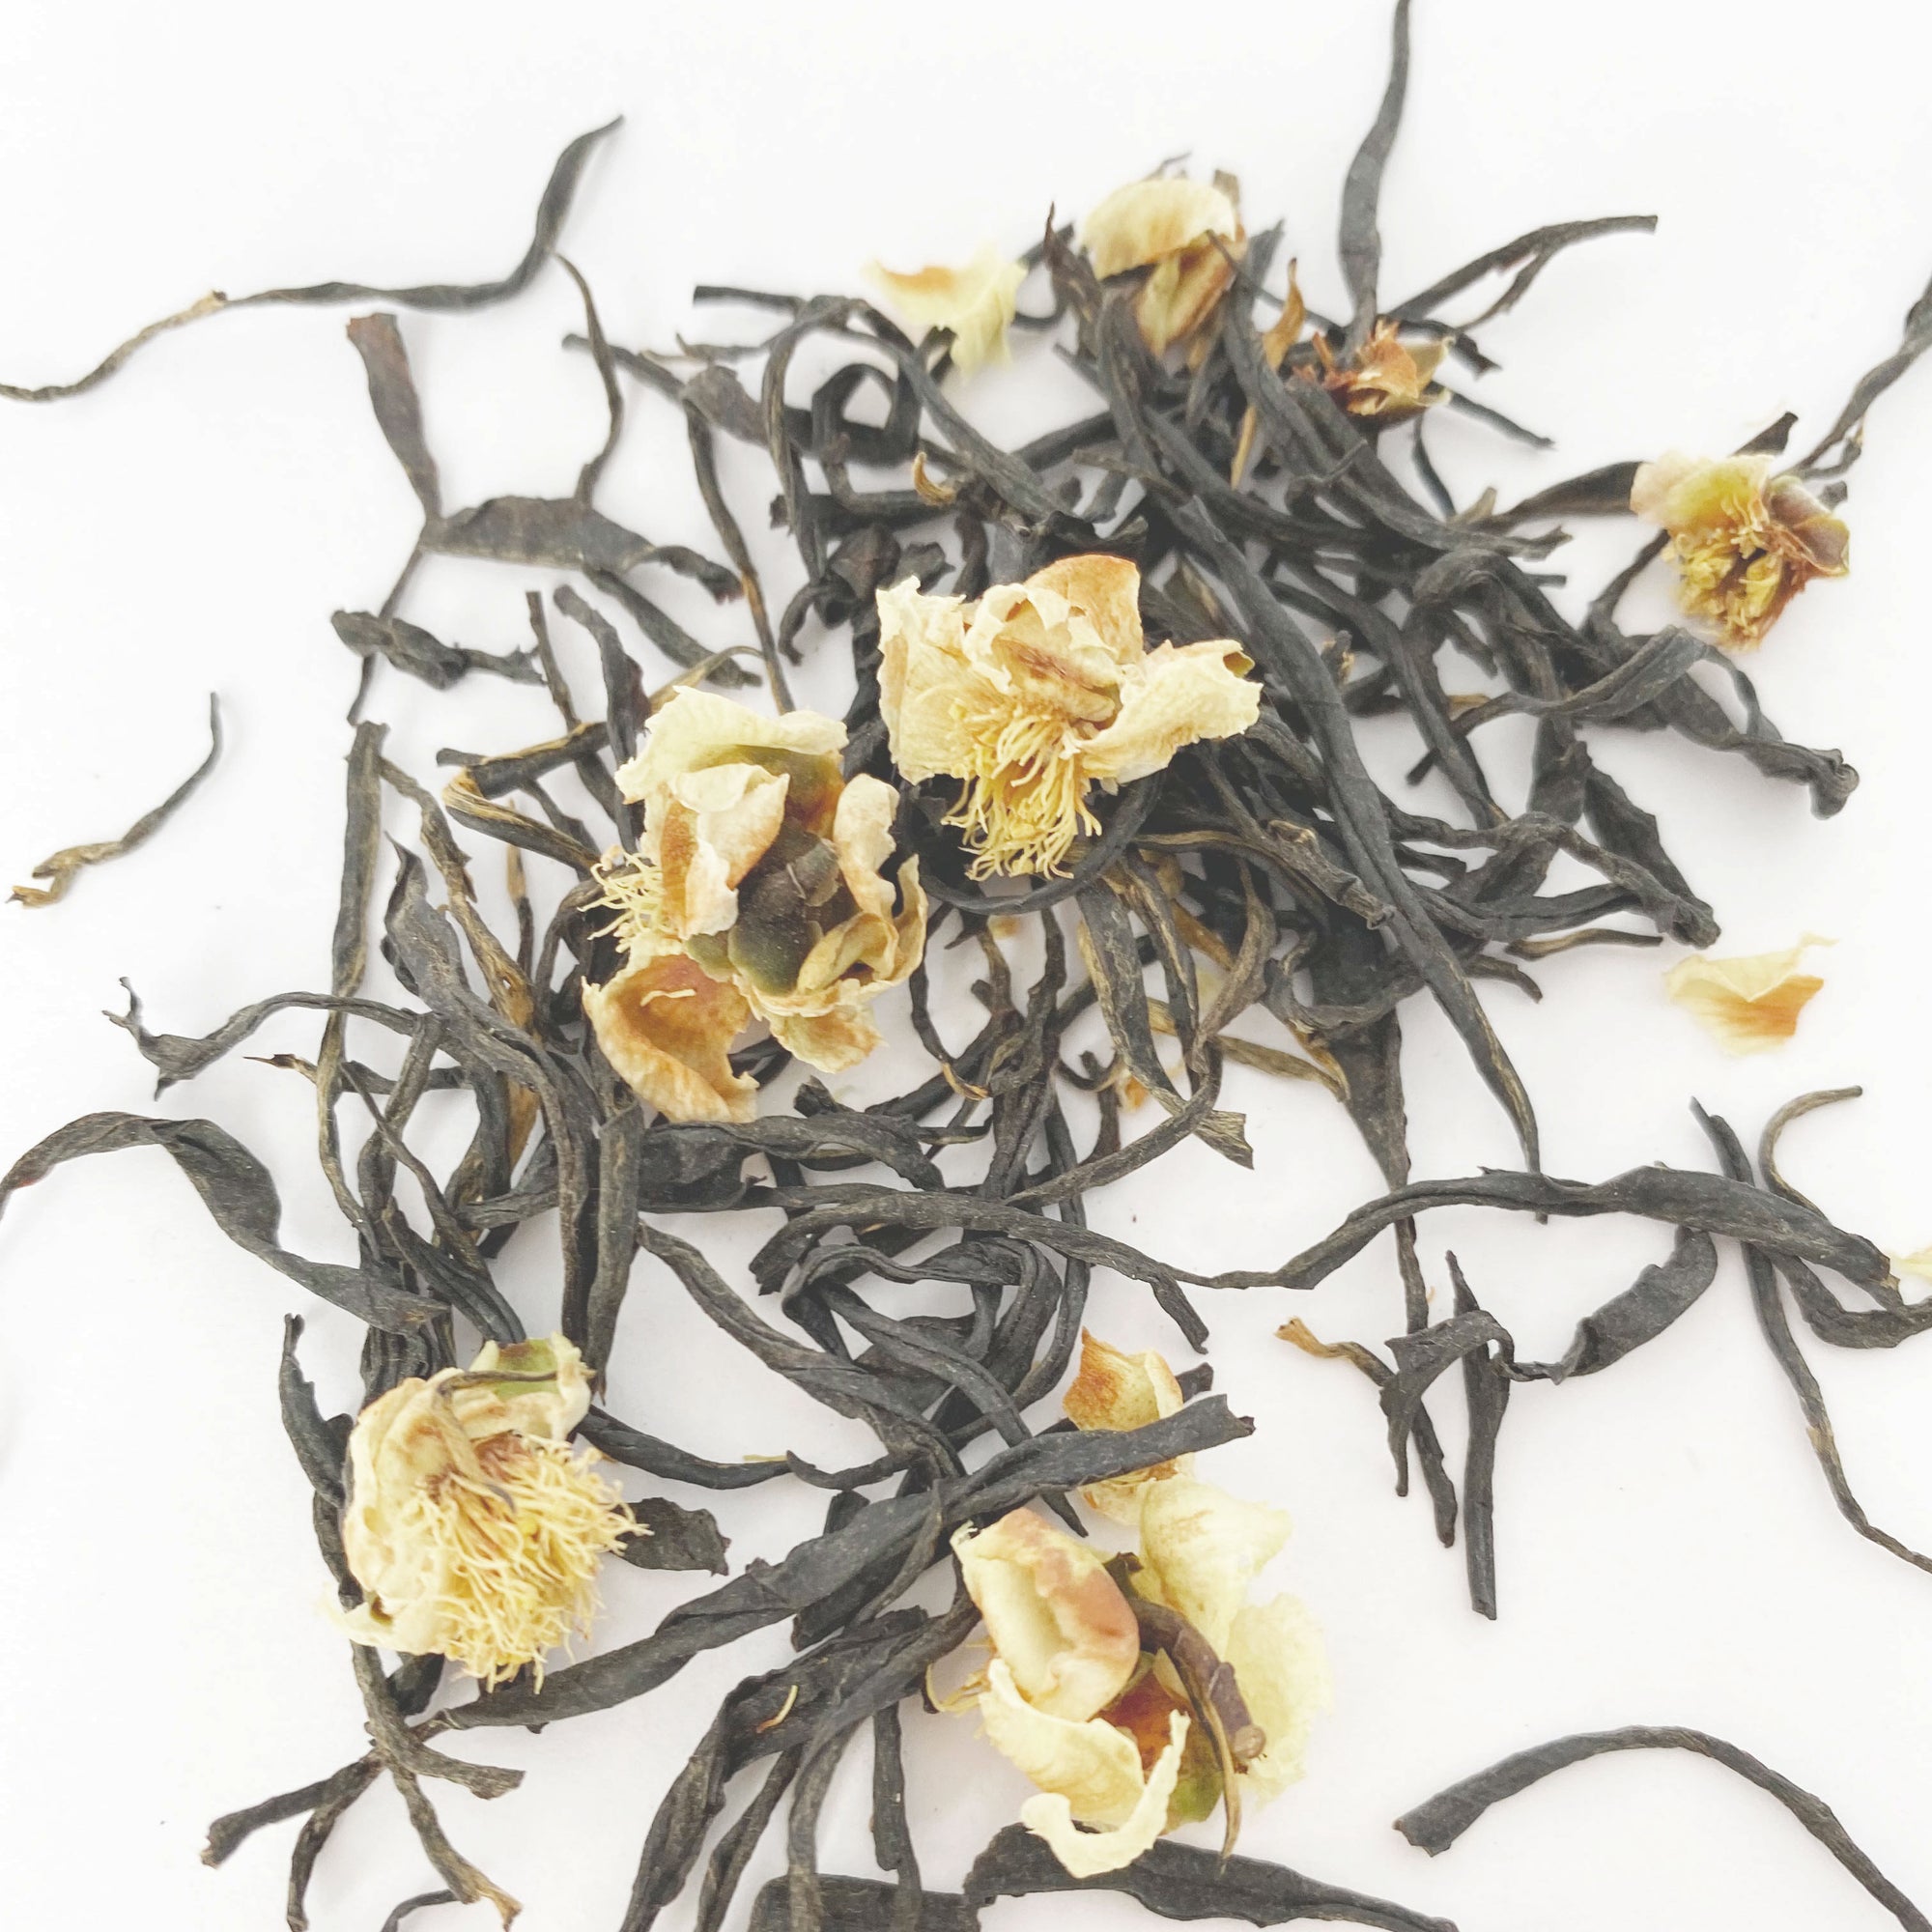 Loose leaf tea with tea flowers